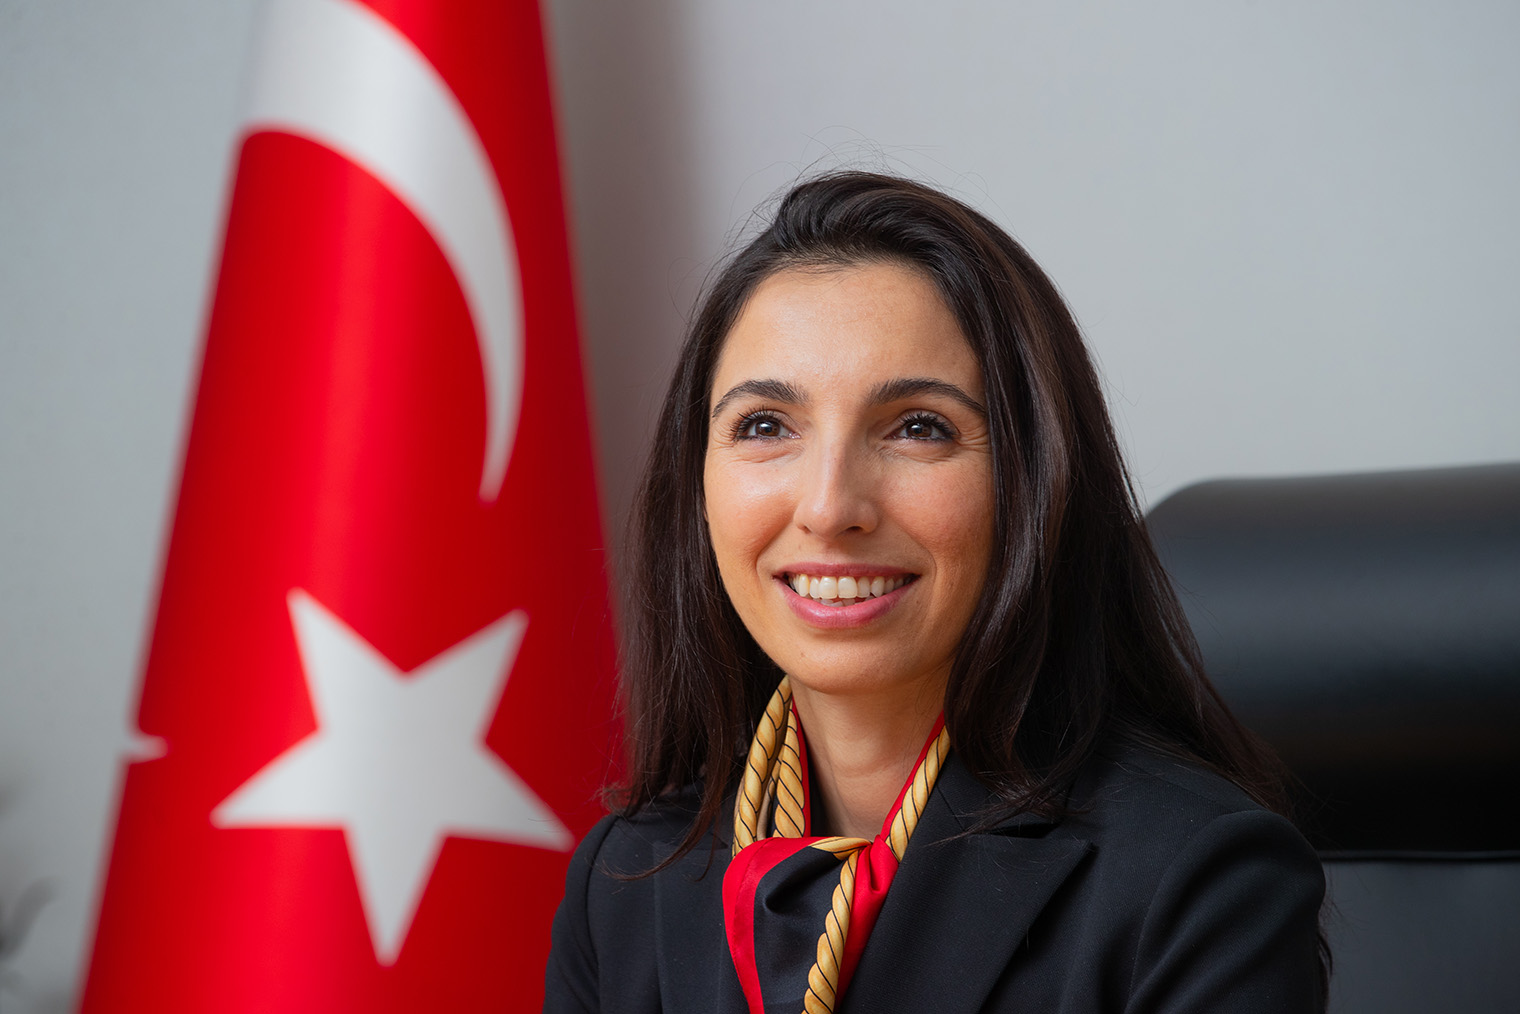 Хафизе Гайе Эркан — первая в истории Турции женщина во главе ЦБ. Фотография: Central Bank of Republic of Turkiye / Getty Images